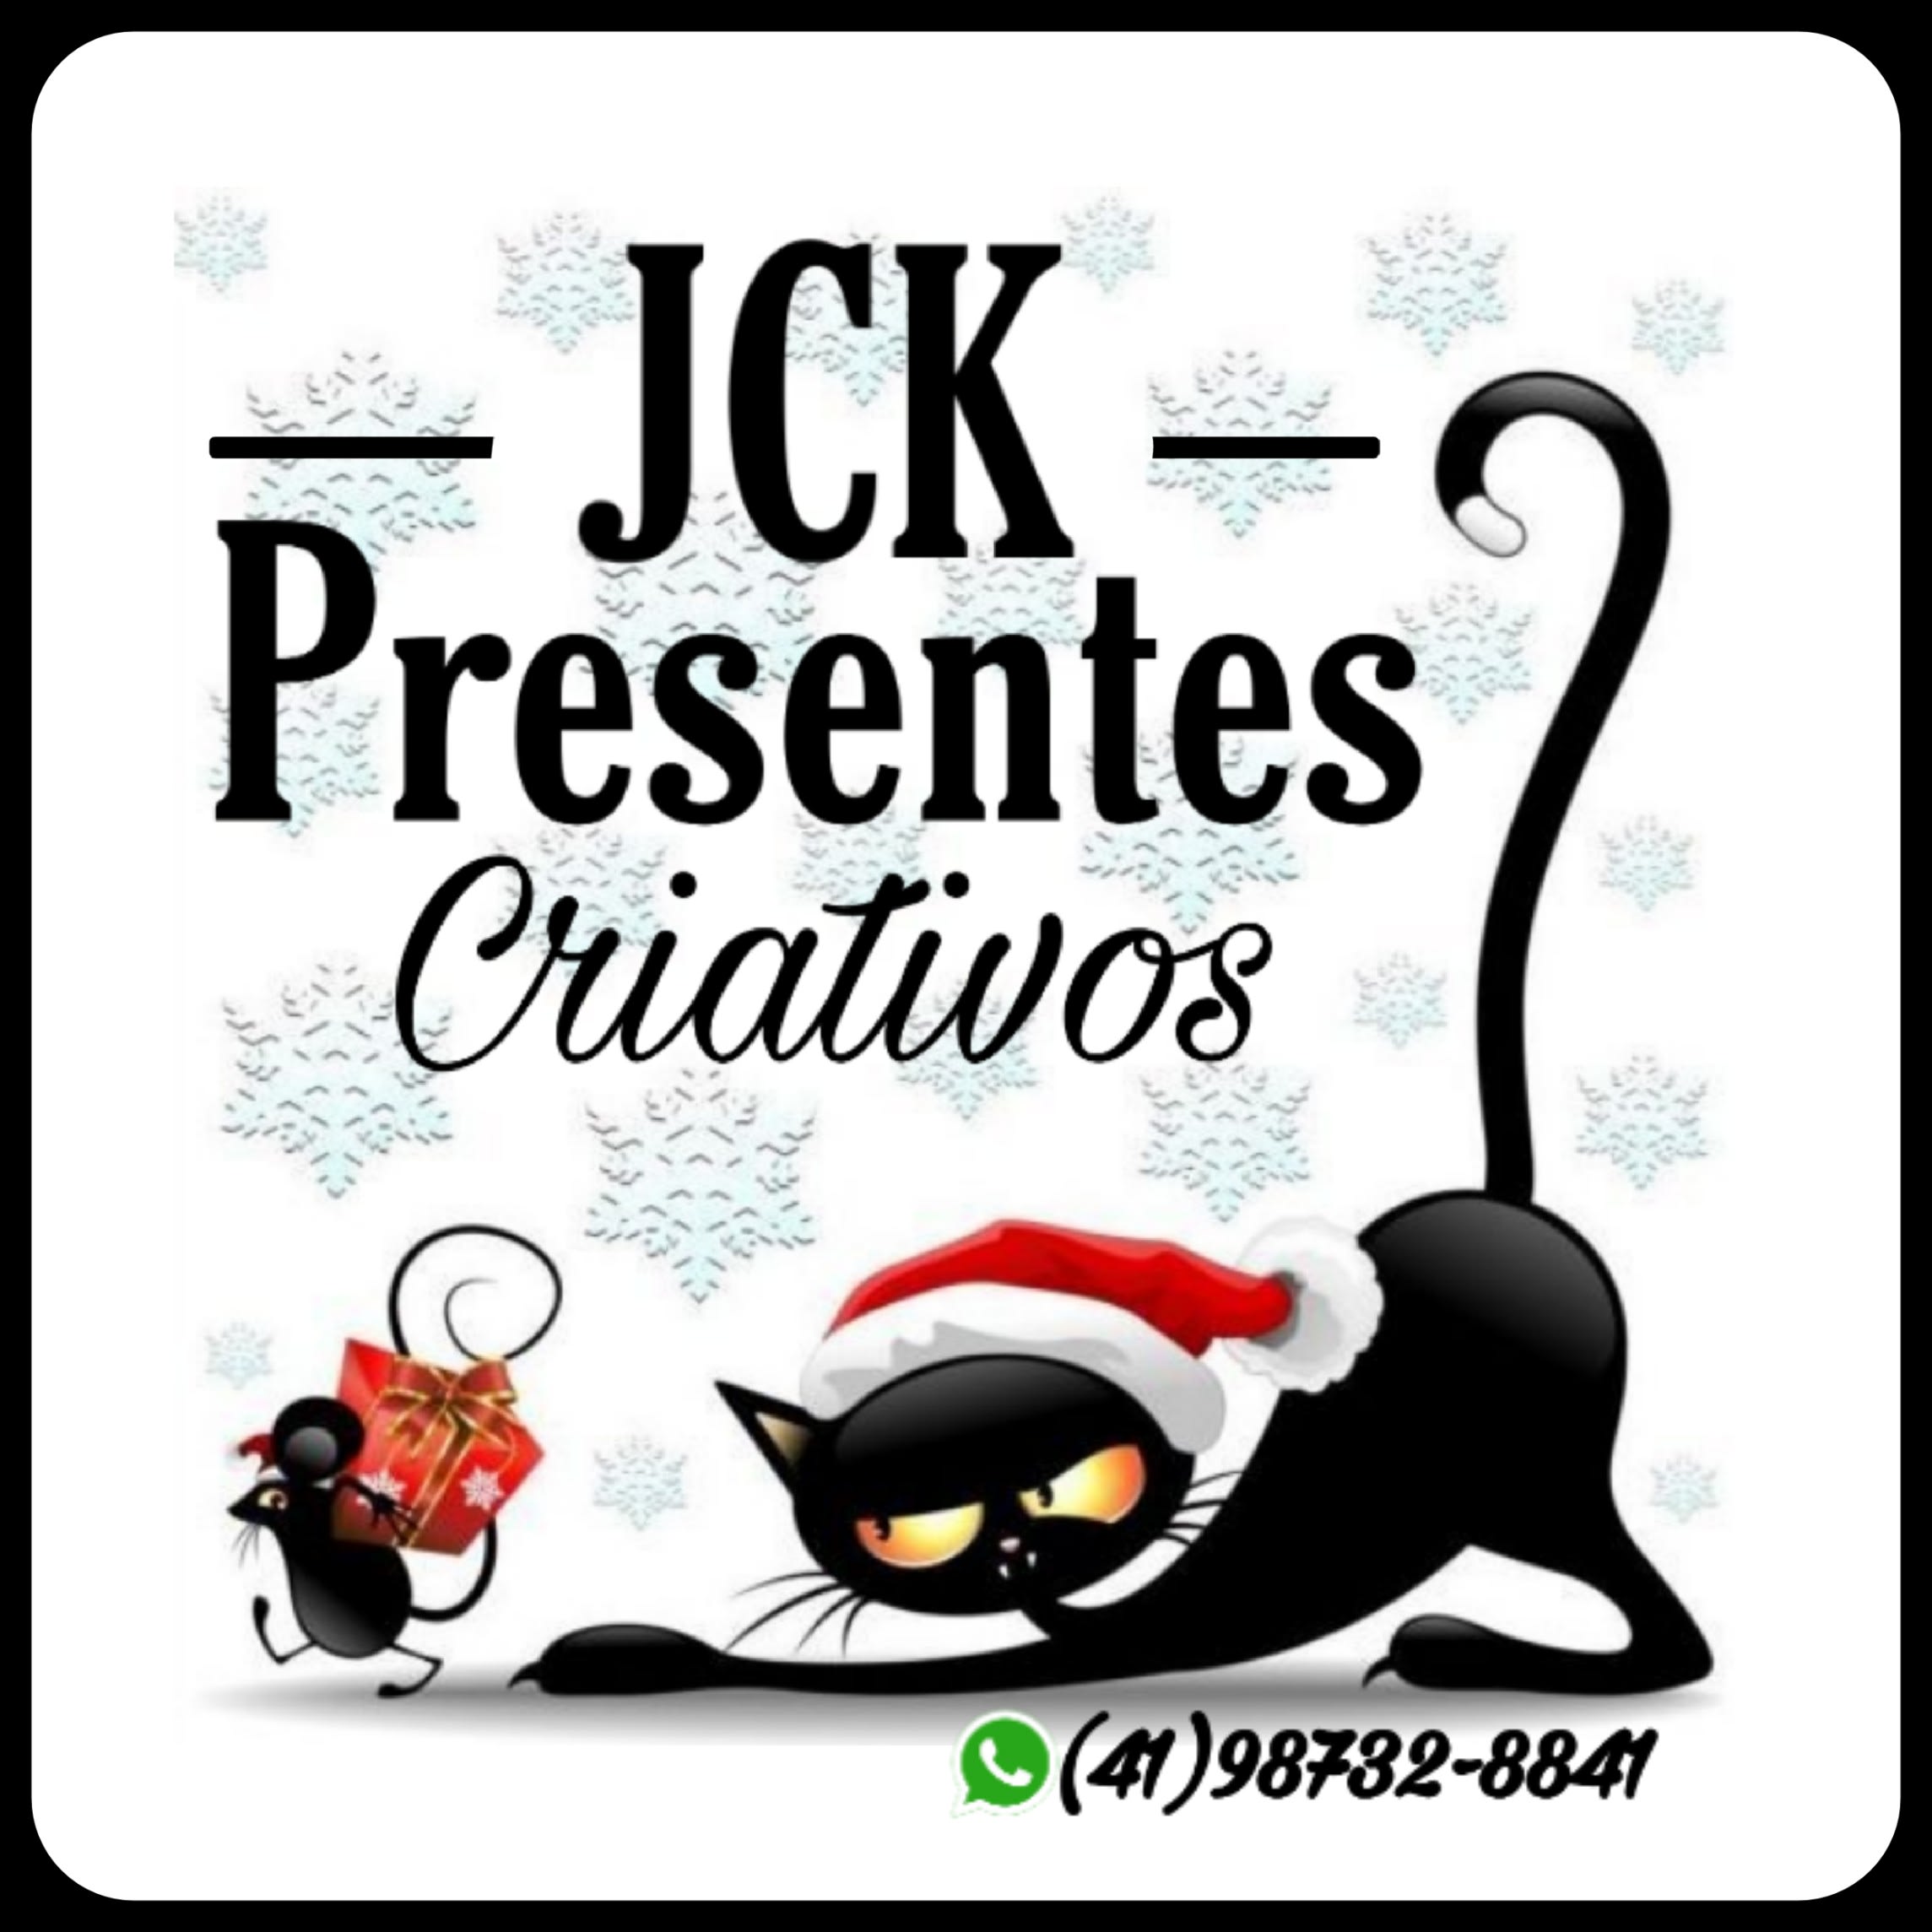 Jck Presentes Criativos